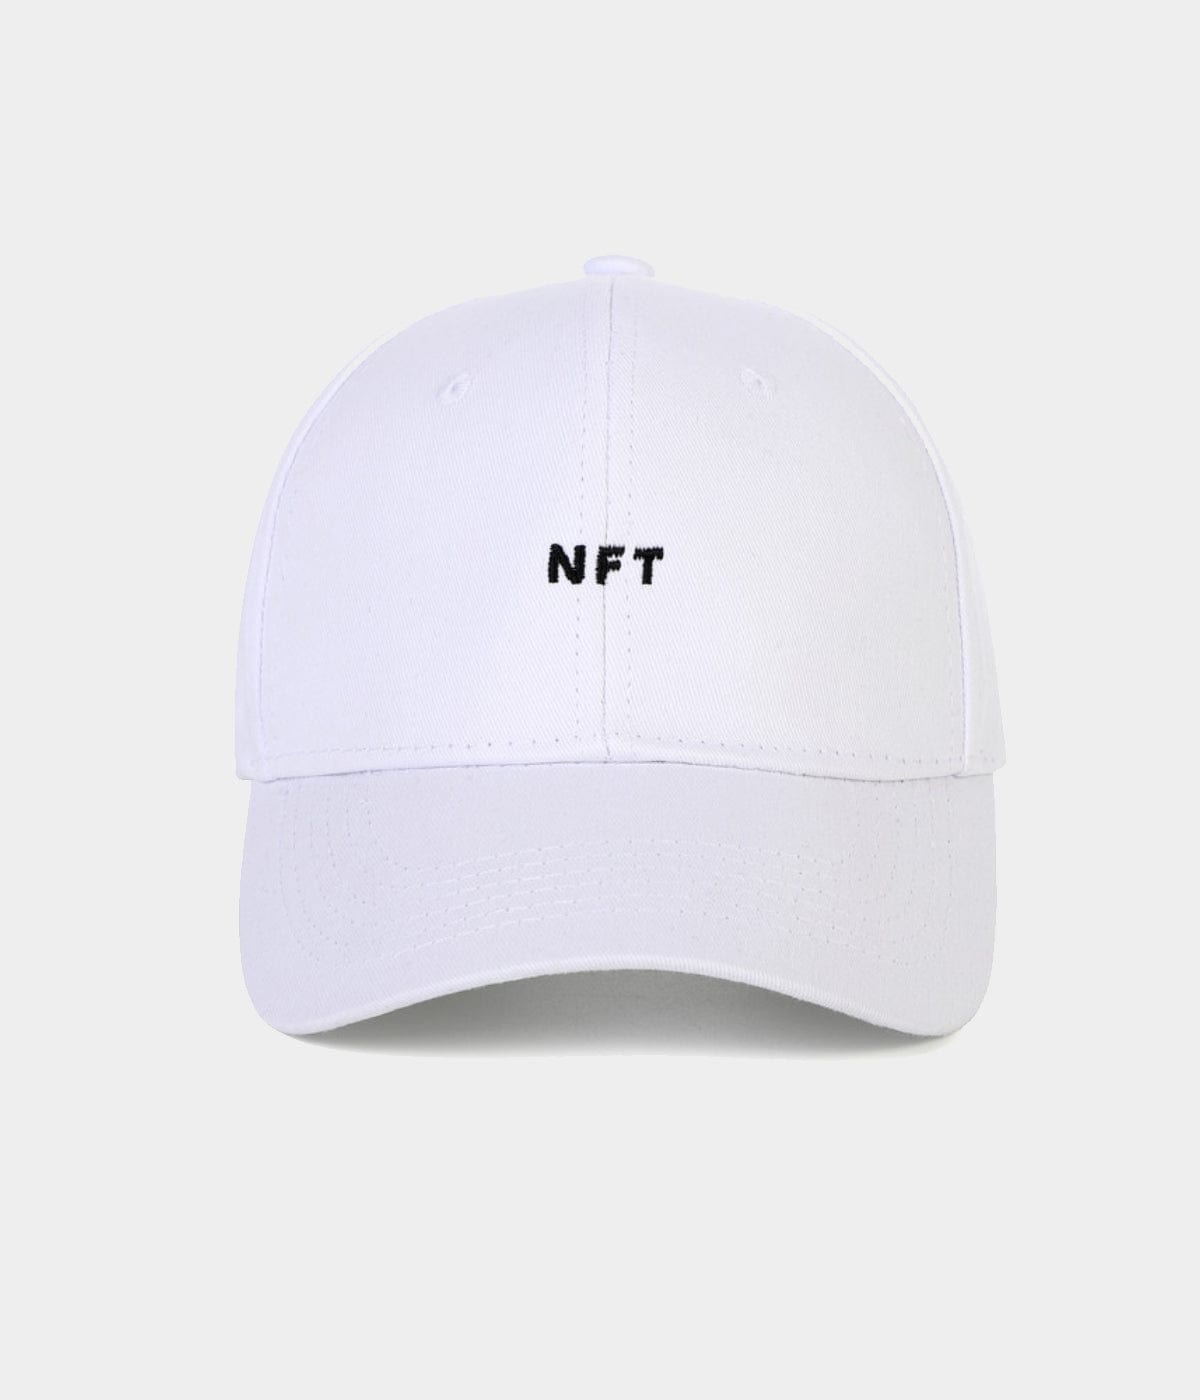 NFT CAP.